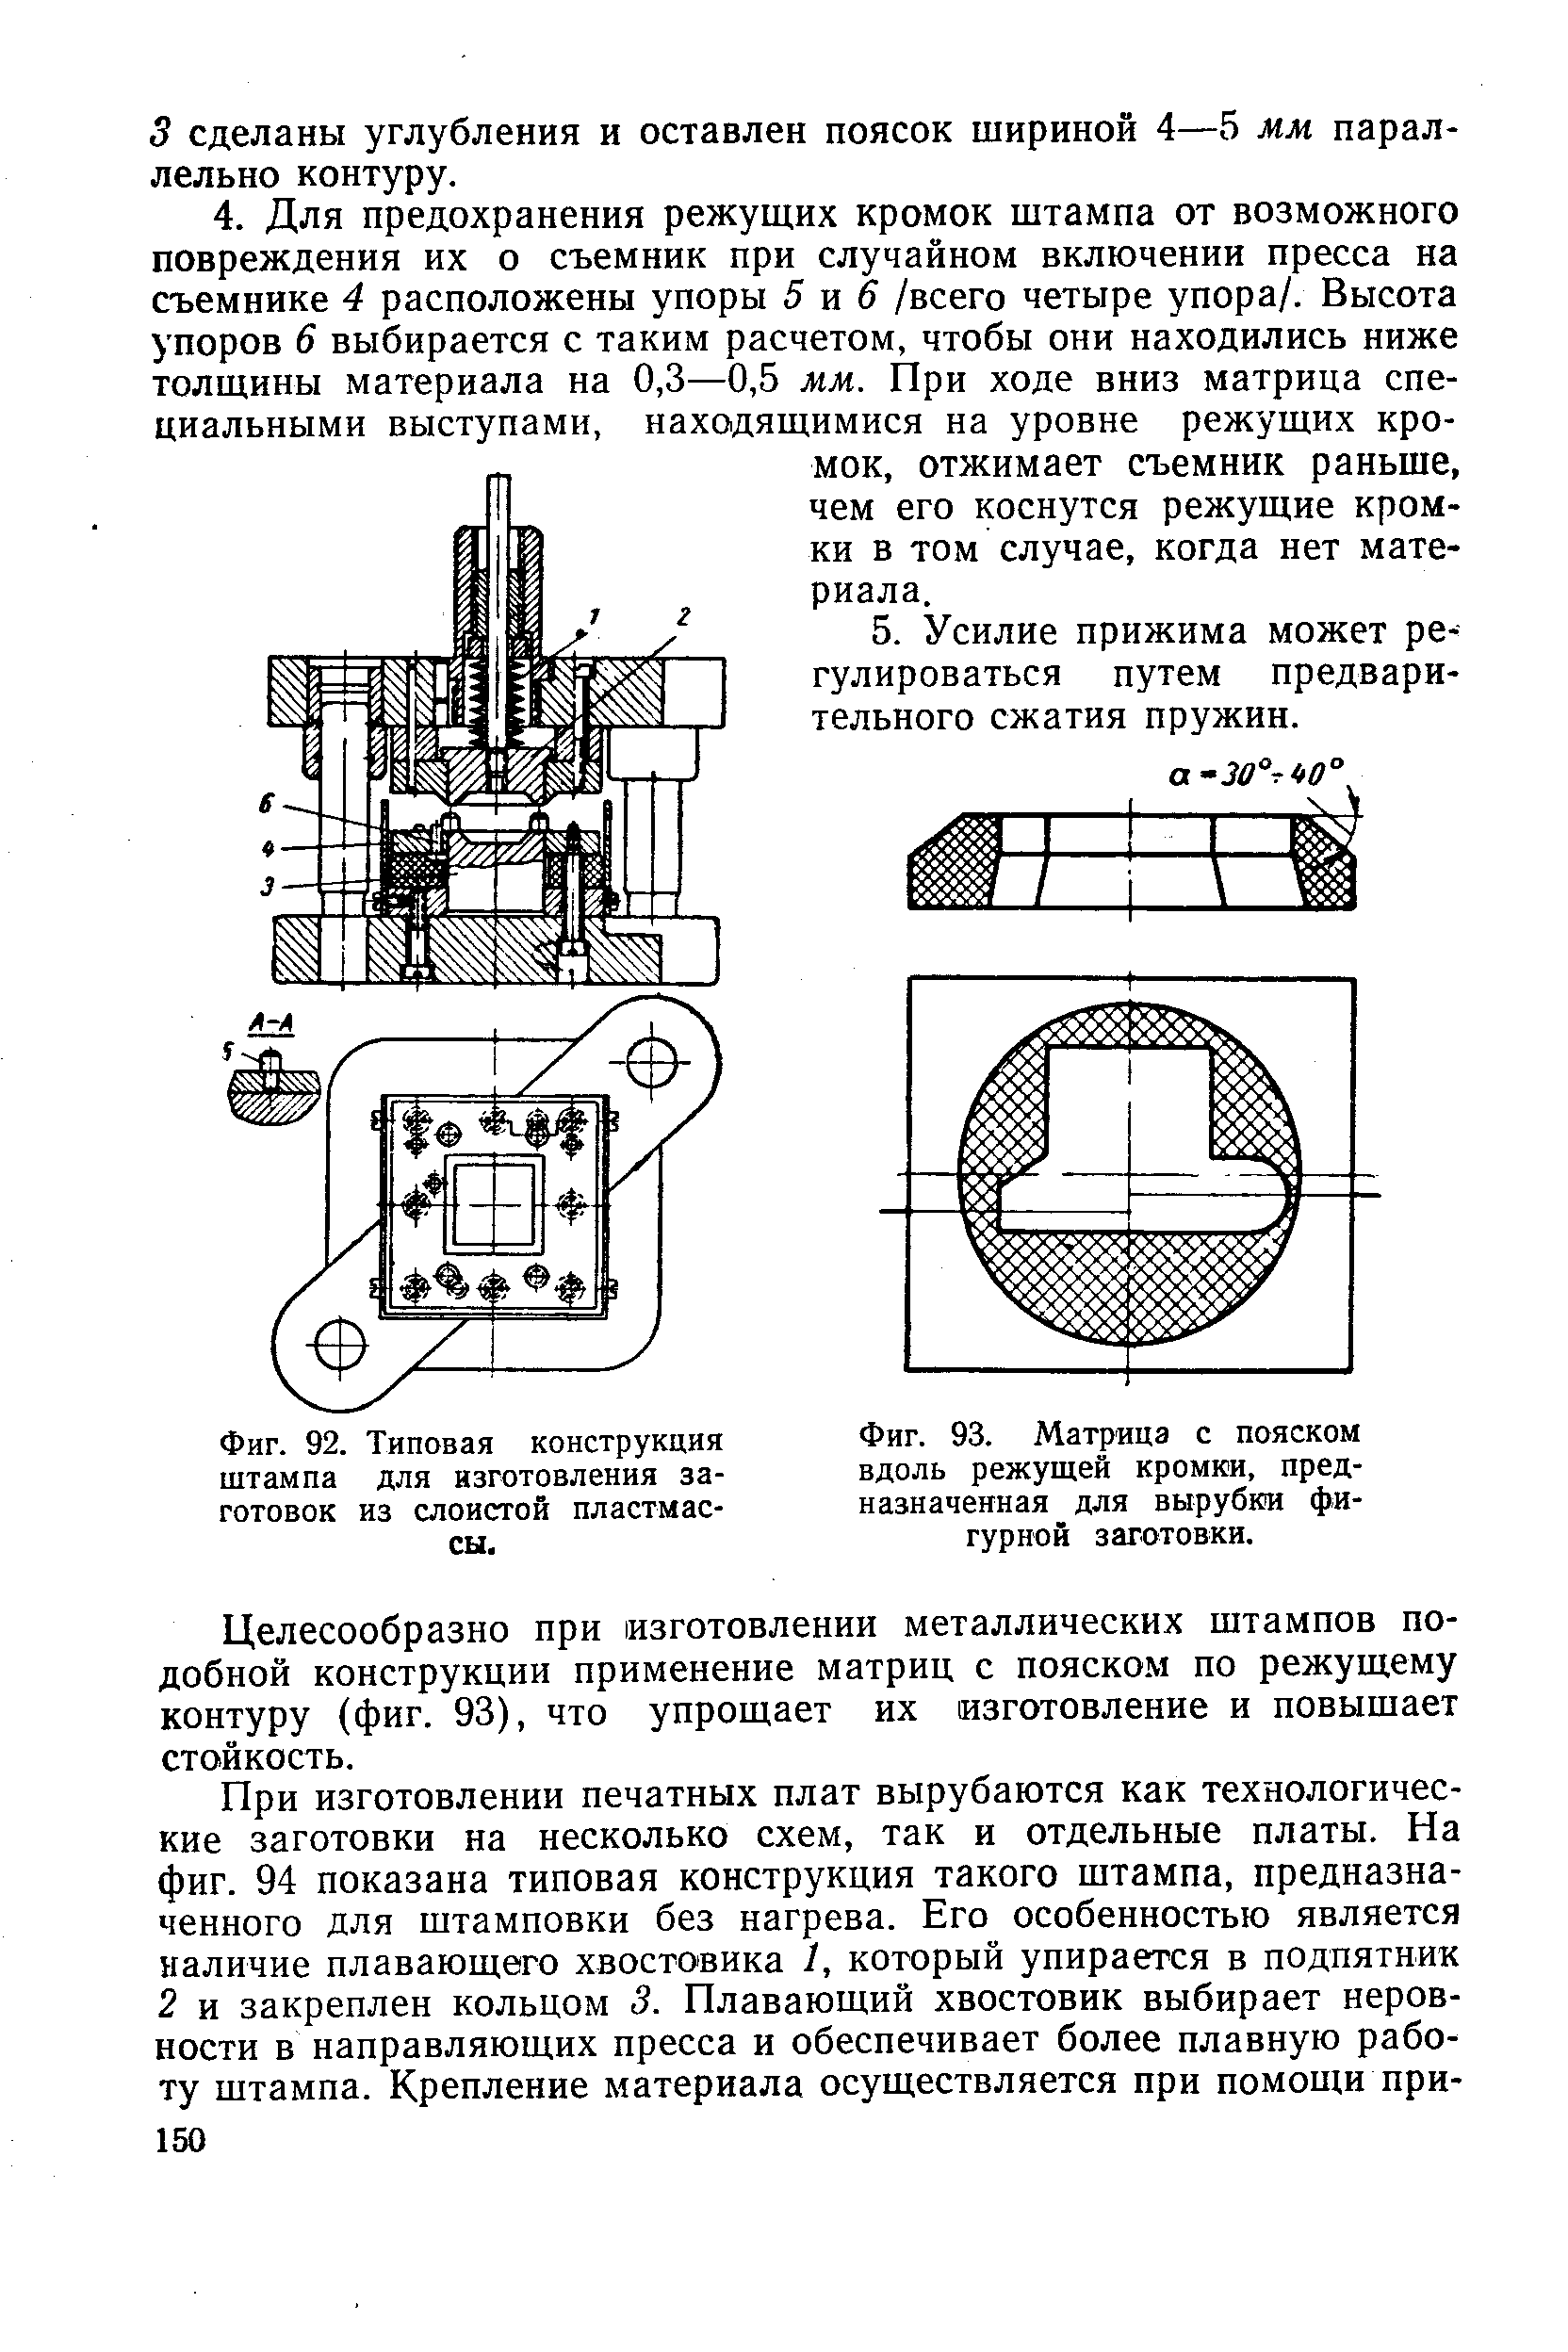 Фиг. 92. Типовая конструкция штампа для изготовления заготовок из слоистой пластмассы.
